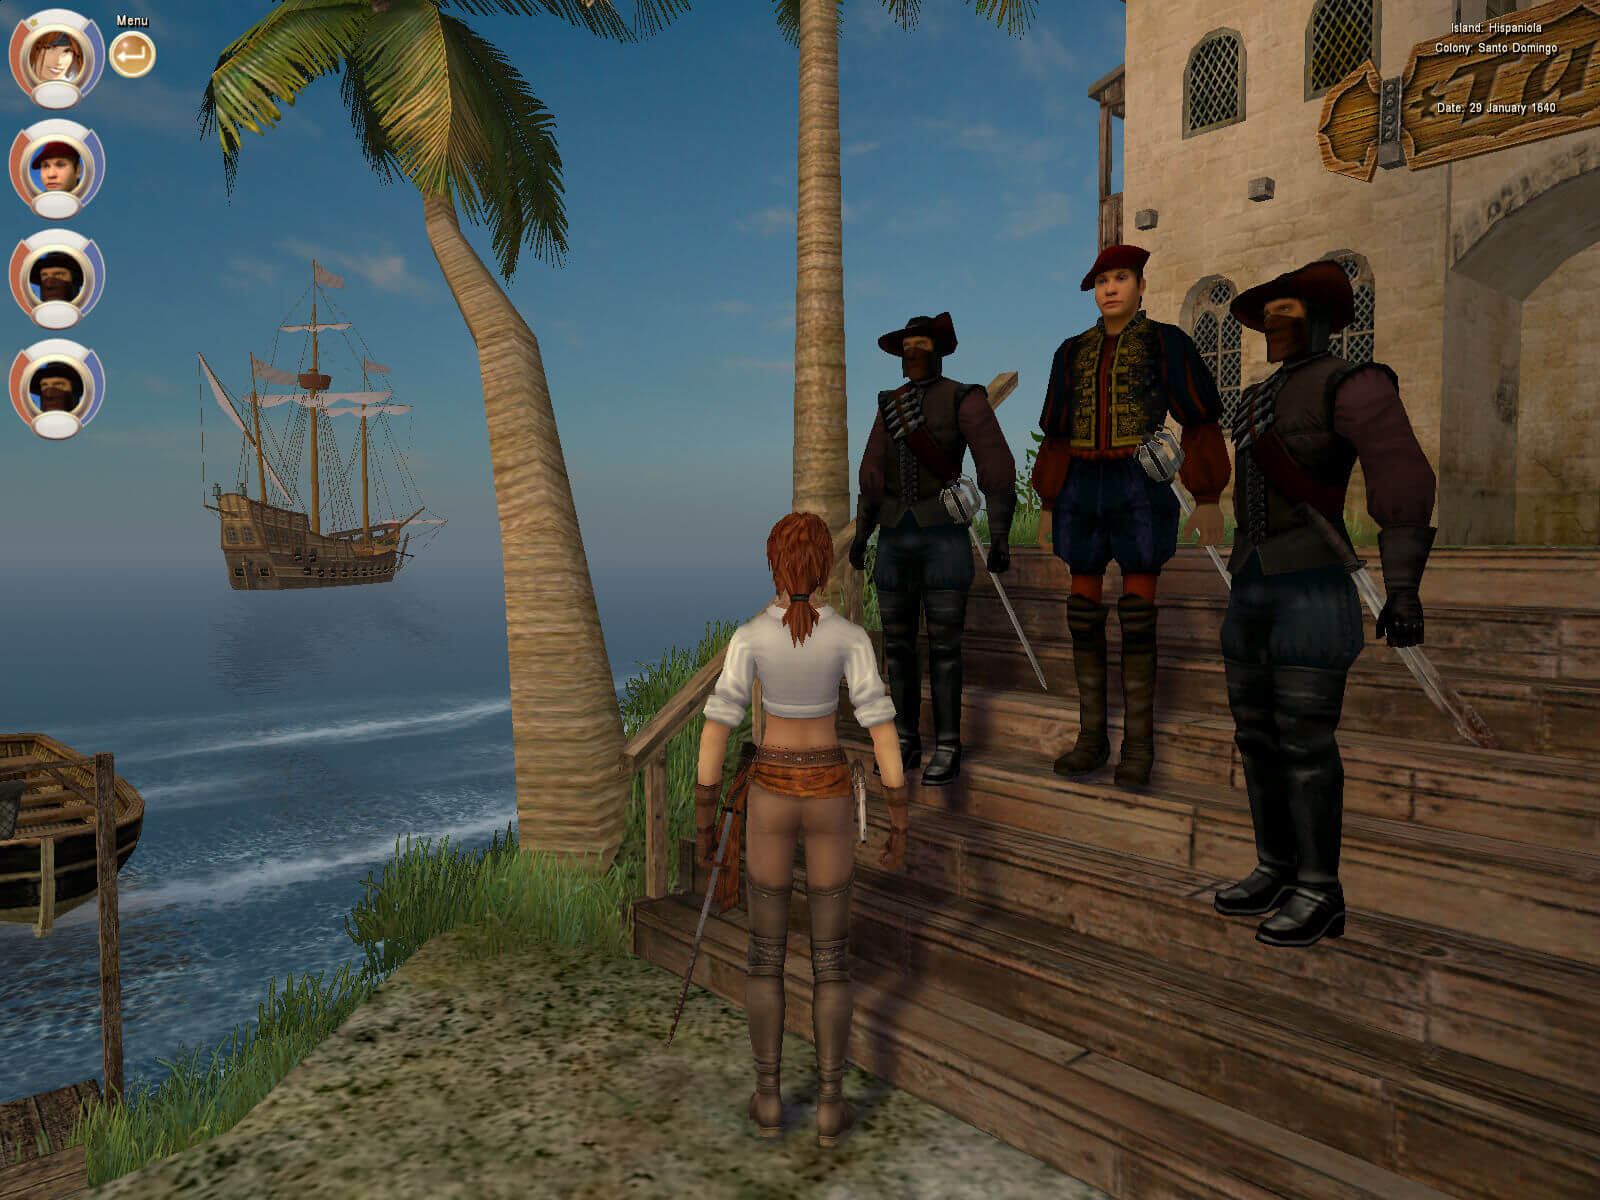 Версия корсары 3. Корсары 3 пираты Карибского моря. Корсары III (2005). Age of Pirates: Caribbean Tales игра. Корсары пираты Карибского моря игра.